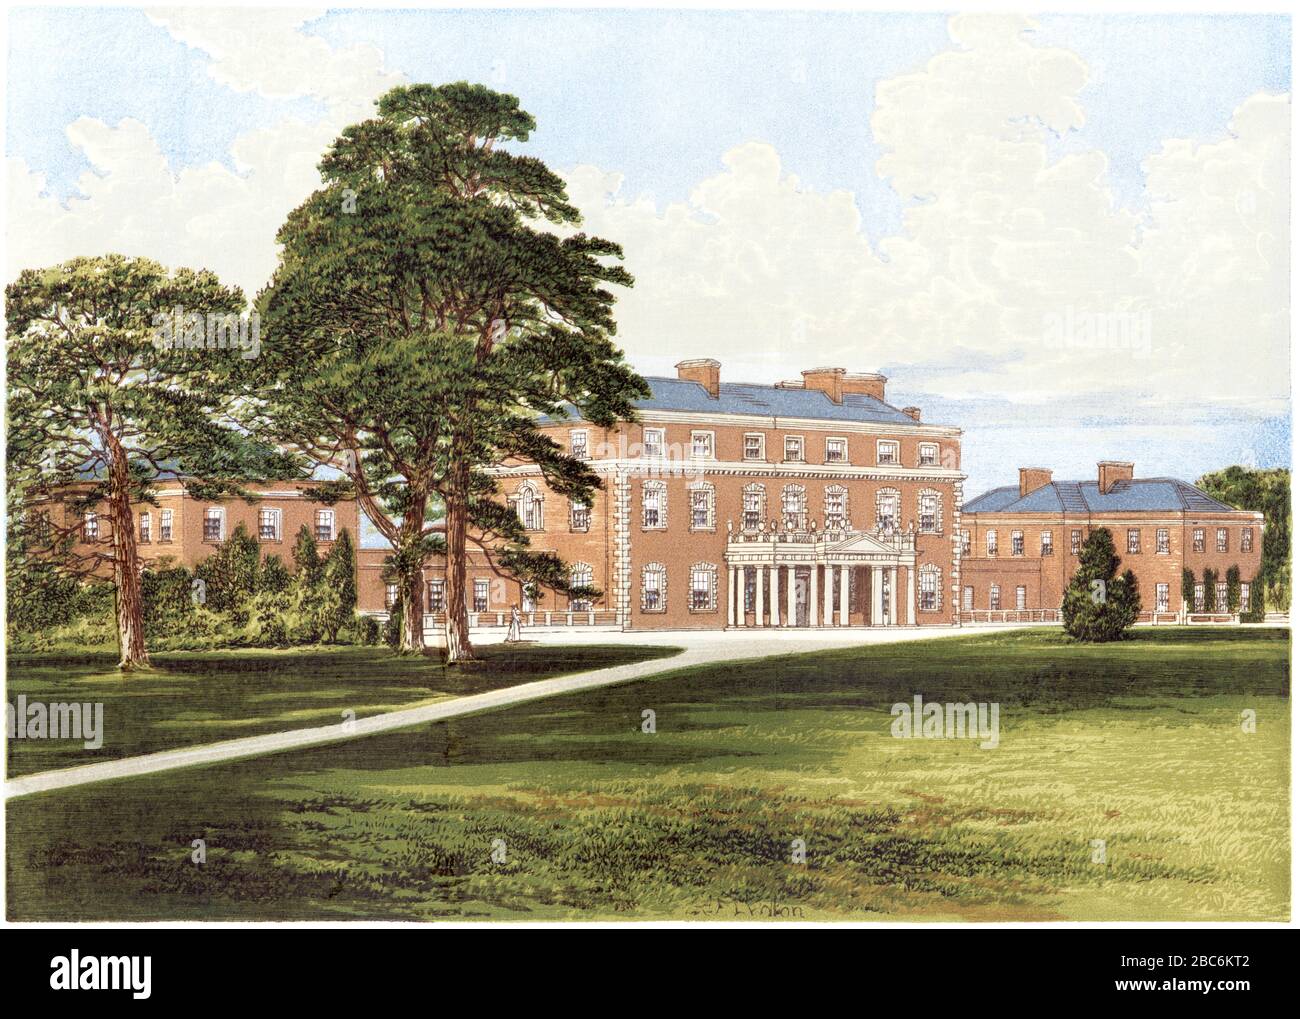 Eine farbige Illustration von Trafalgar House (Trafalgar Park) in der Nähe von Salisbury, Wiltshire, gescannte in hoher Auflösung aus einem Buch, das 1870 gedruckt wurde. Stockfoto